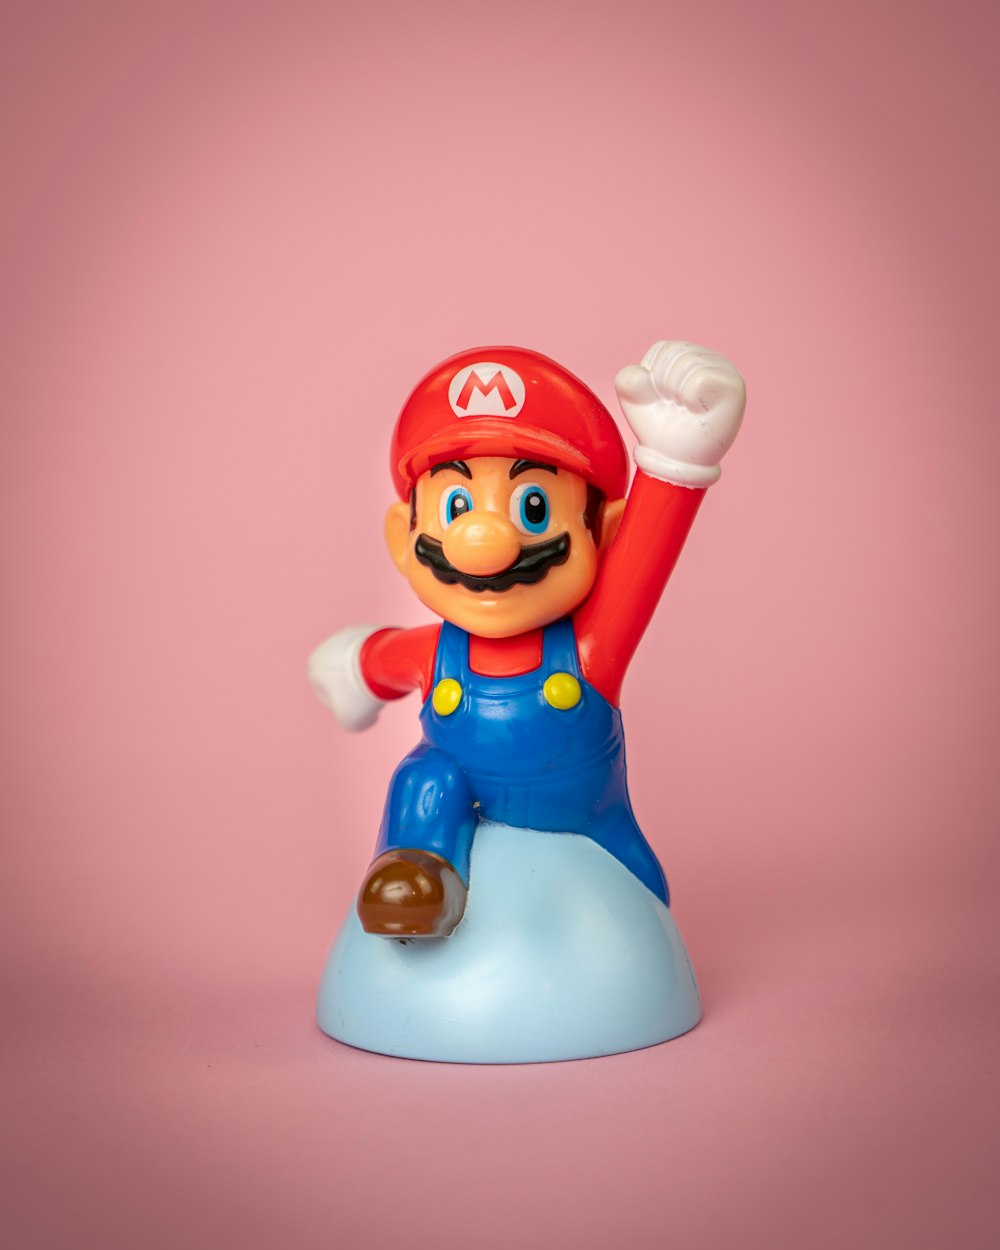 Una figura giocattolo di Mario in cima a un oggetto blu